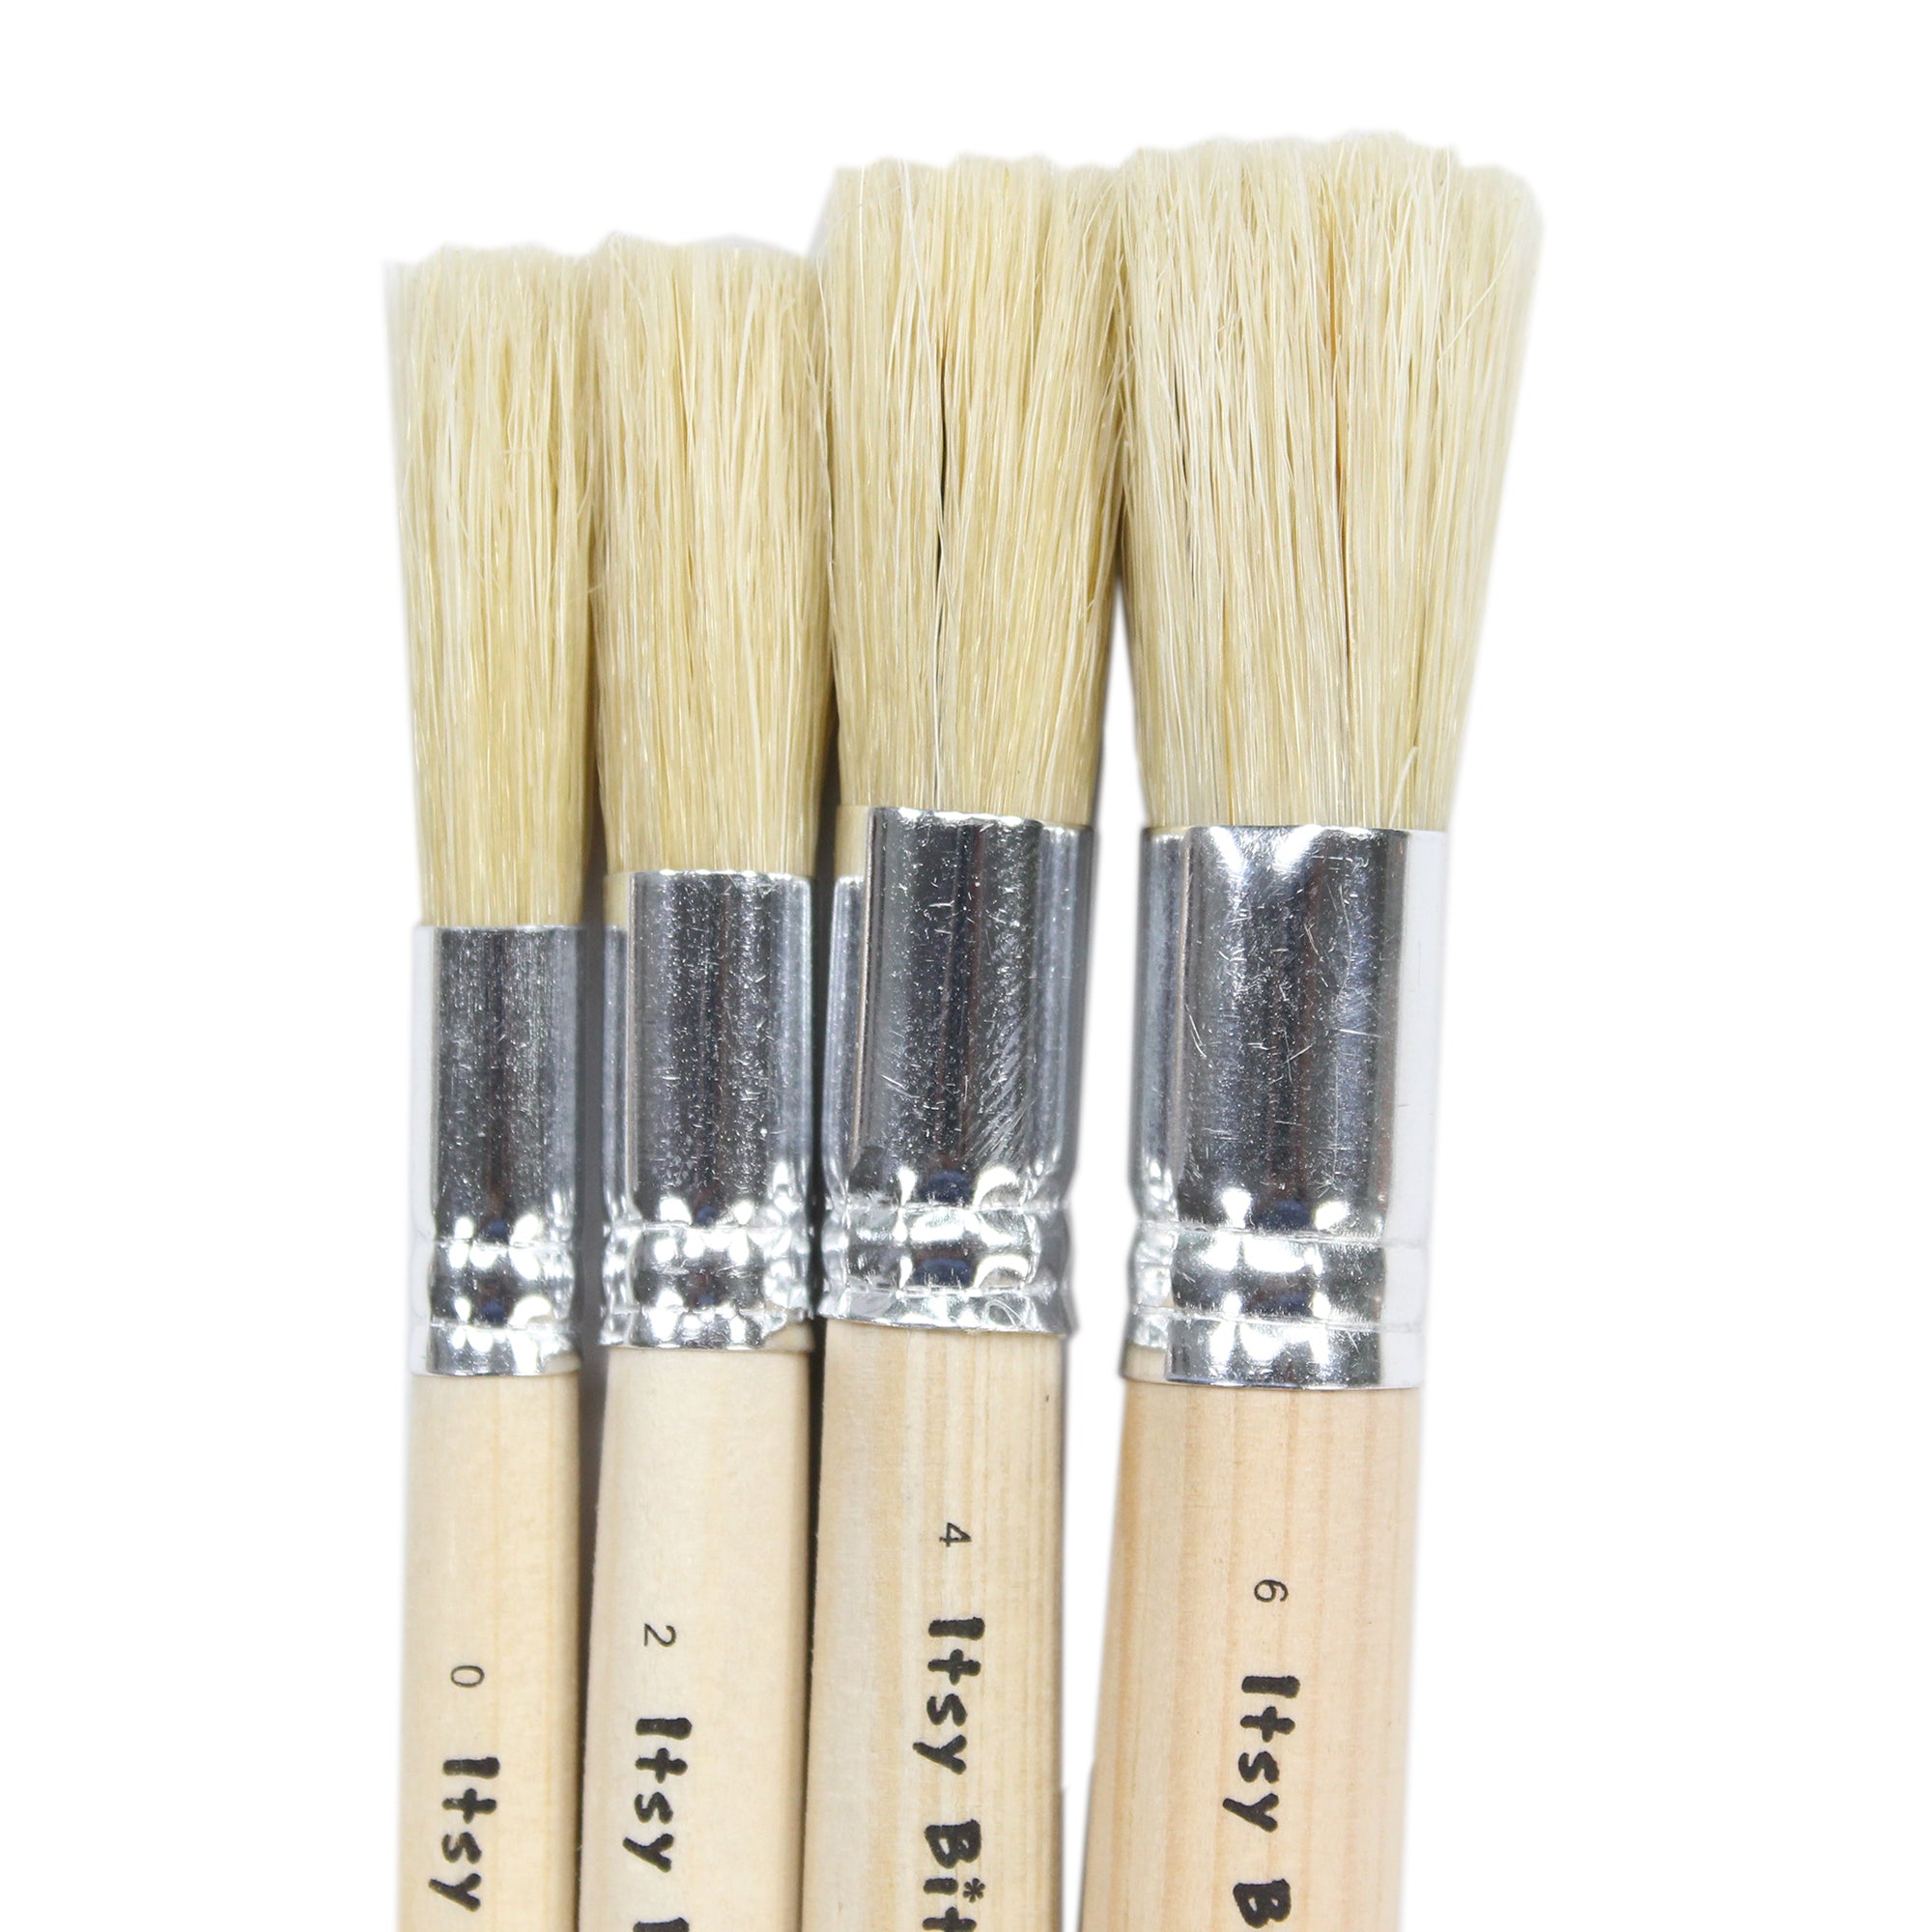 Stencil Brush Bristle Hair 9Cm Wooden Handle Size.0 2 4 6 4Pcs Set